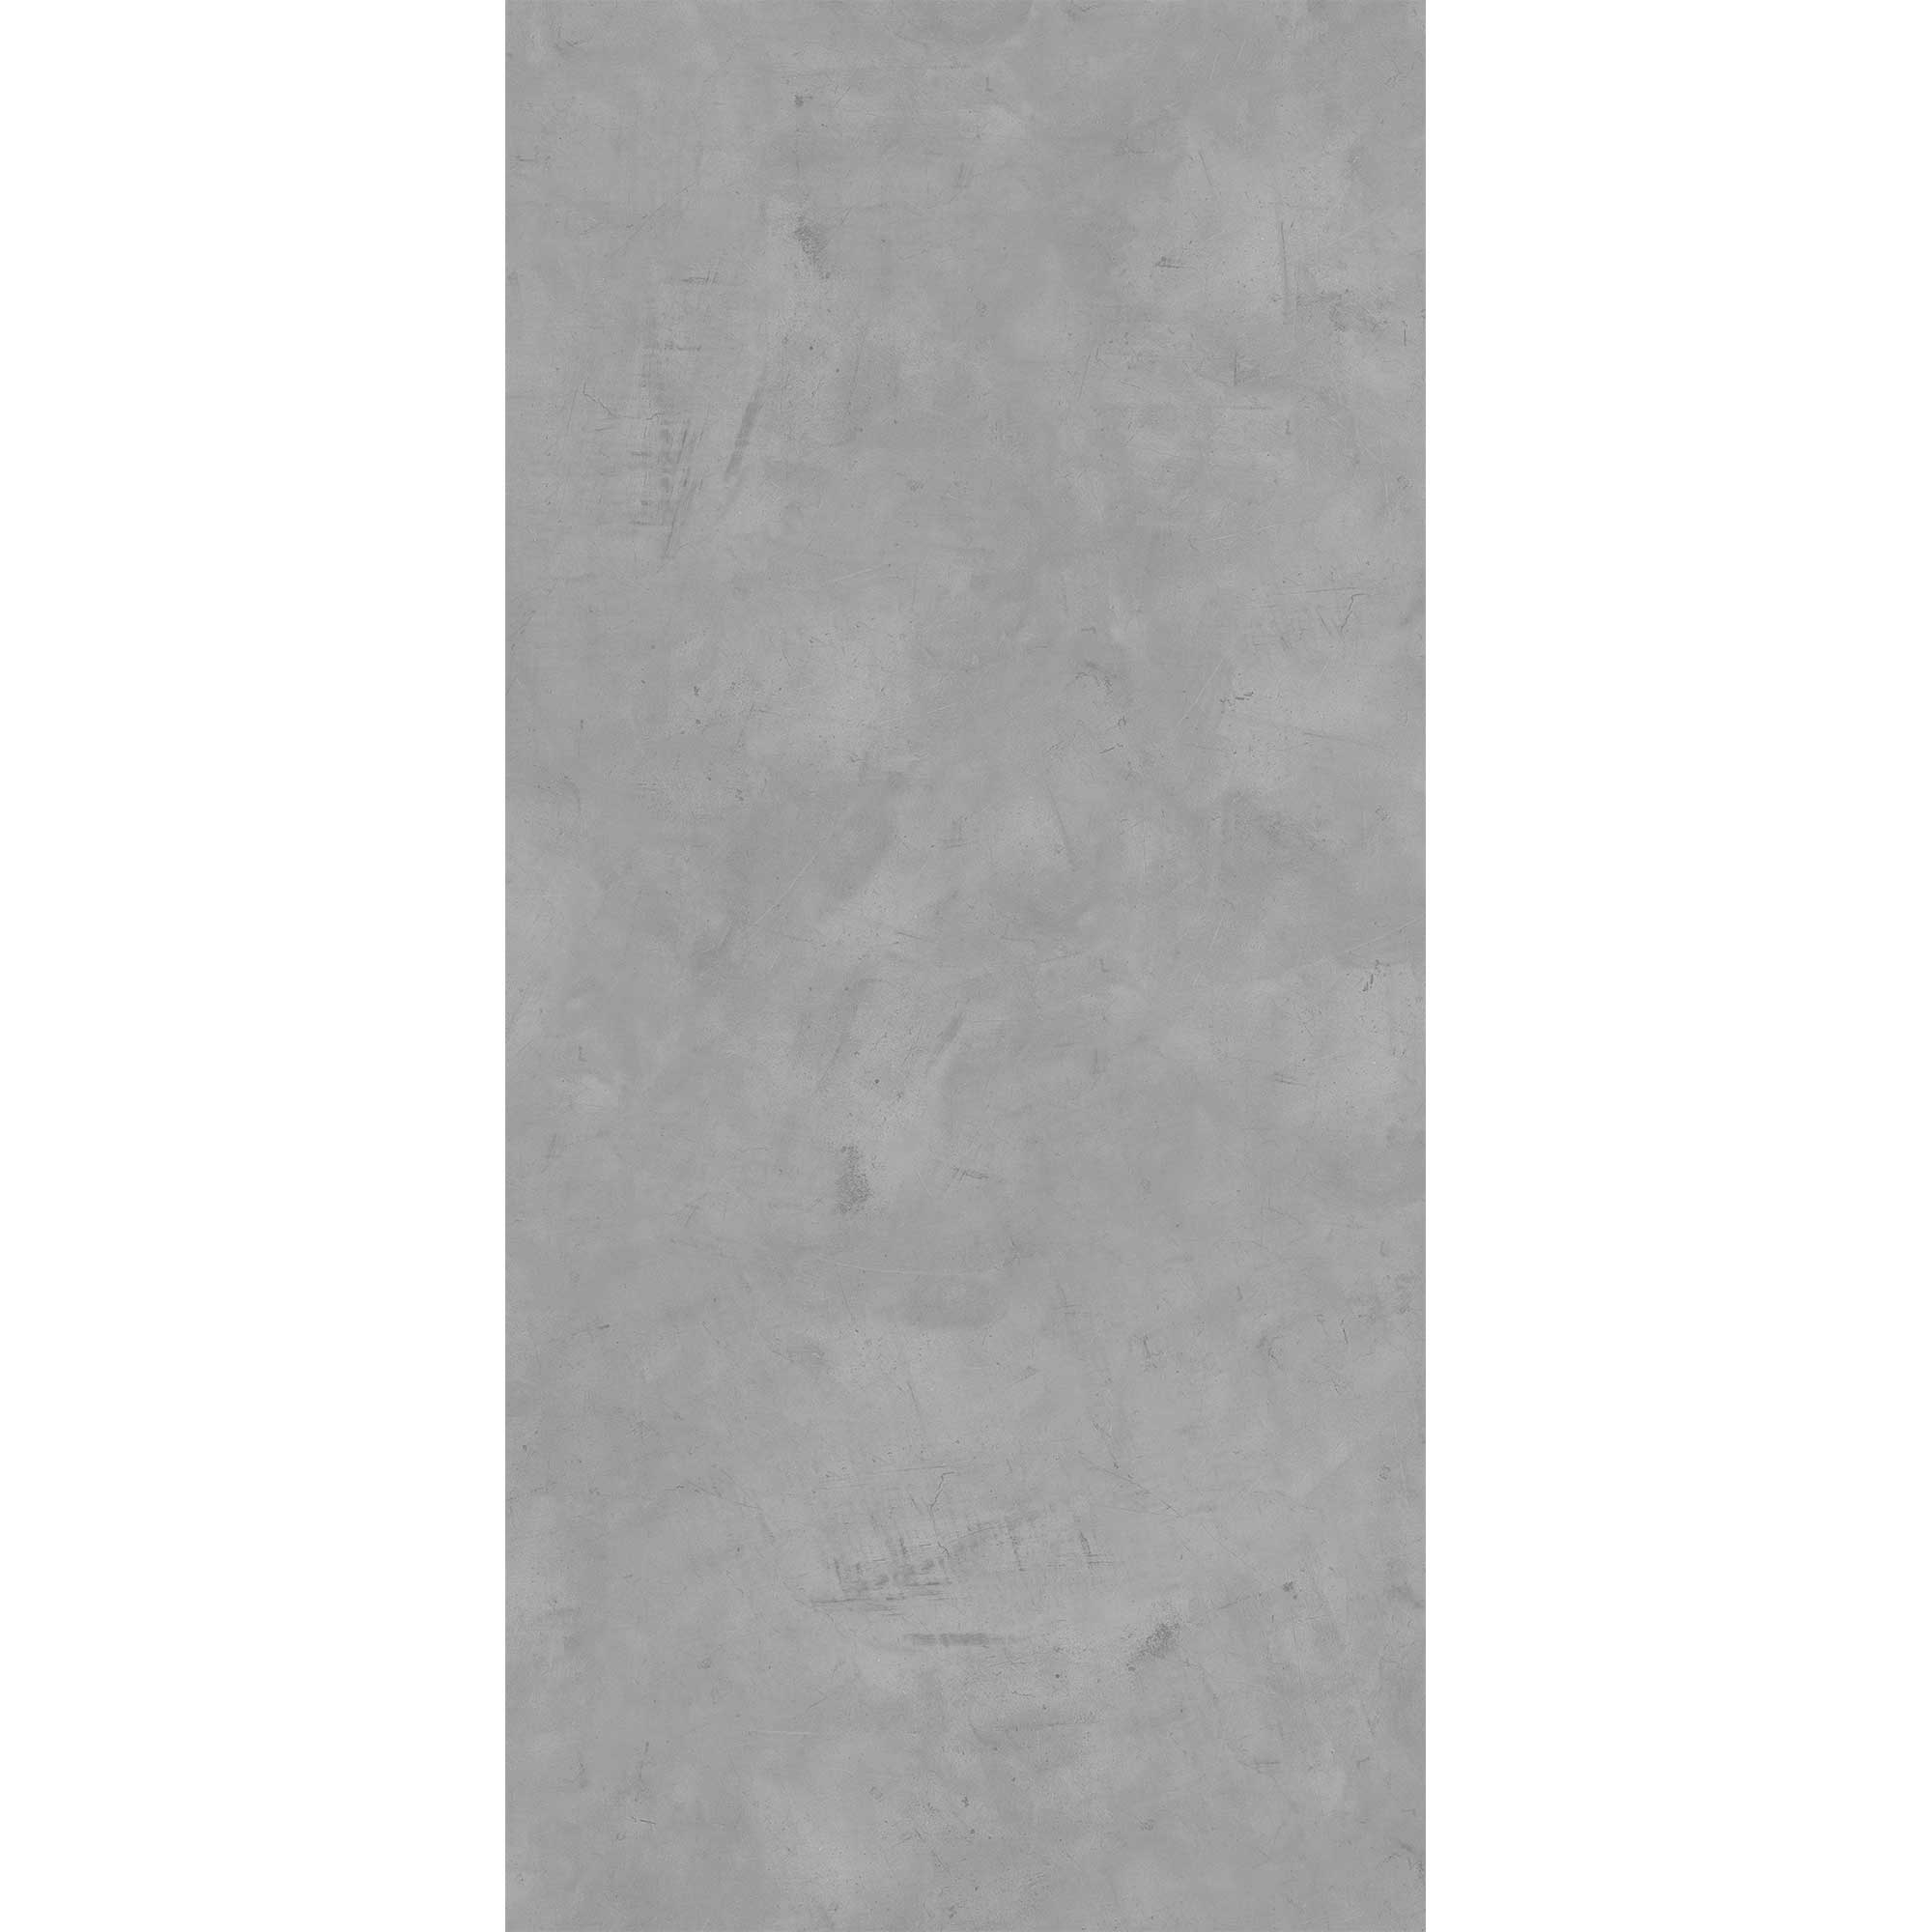 Duschrückwand 'Quick72' Softtouch Betonoptik grau 100 x 210 cm + product picture